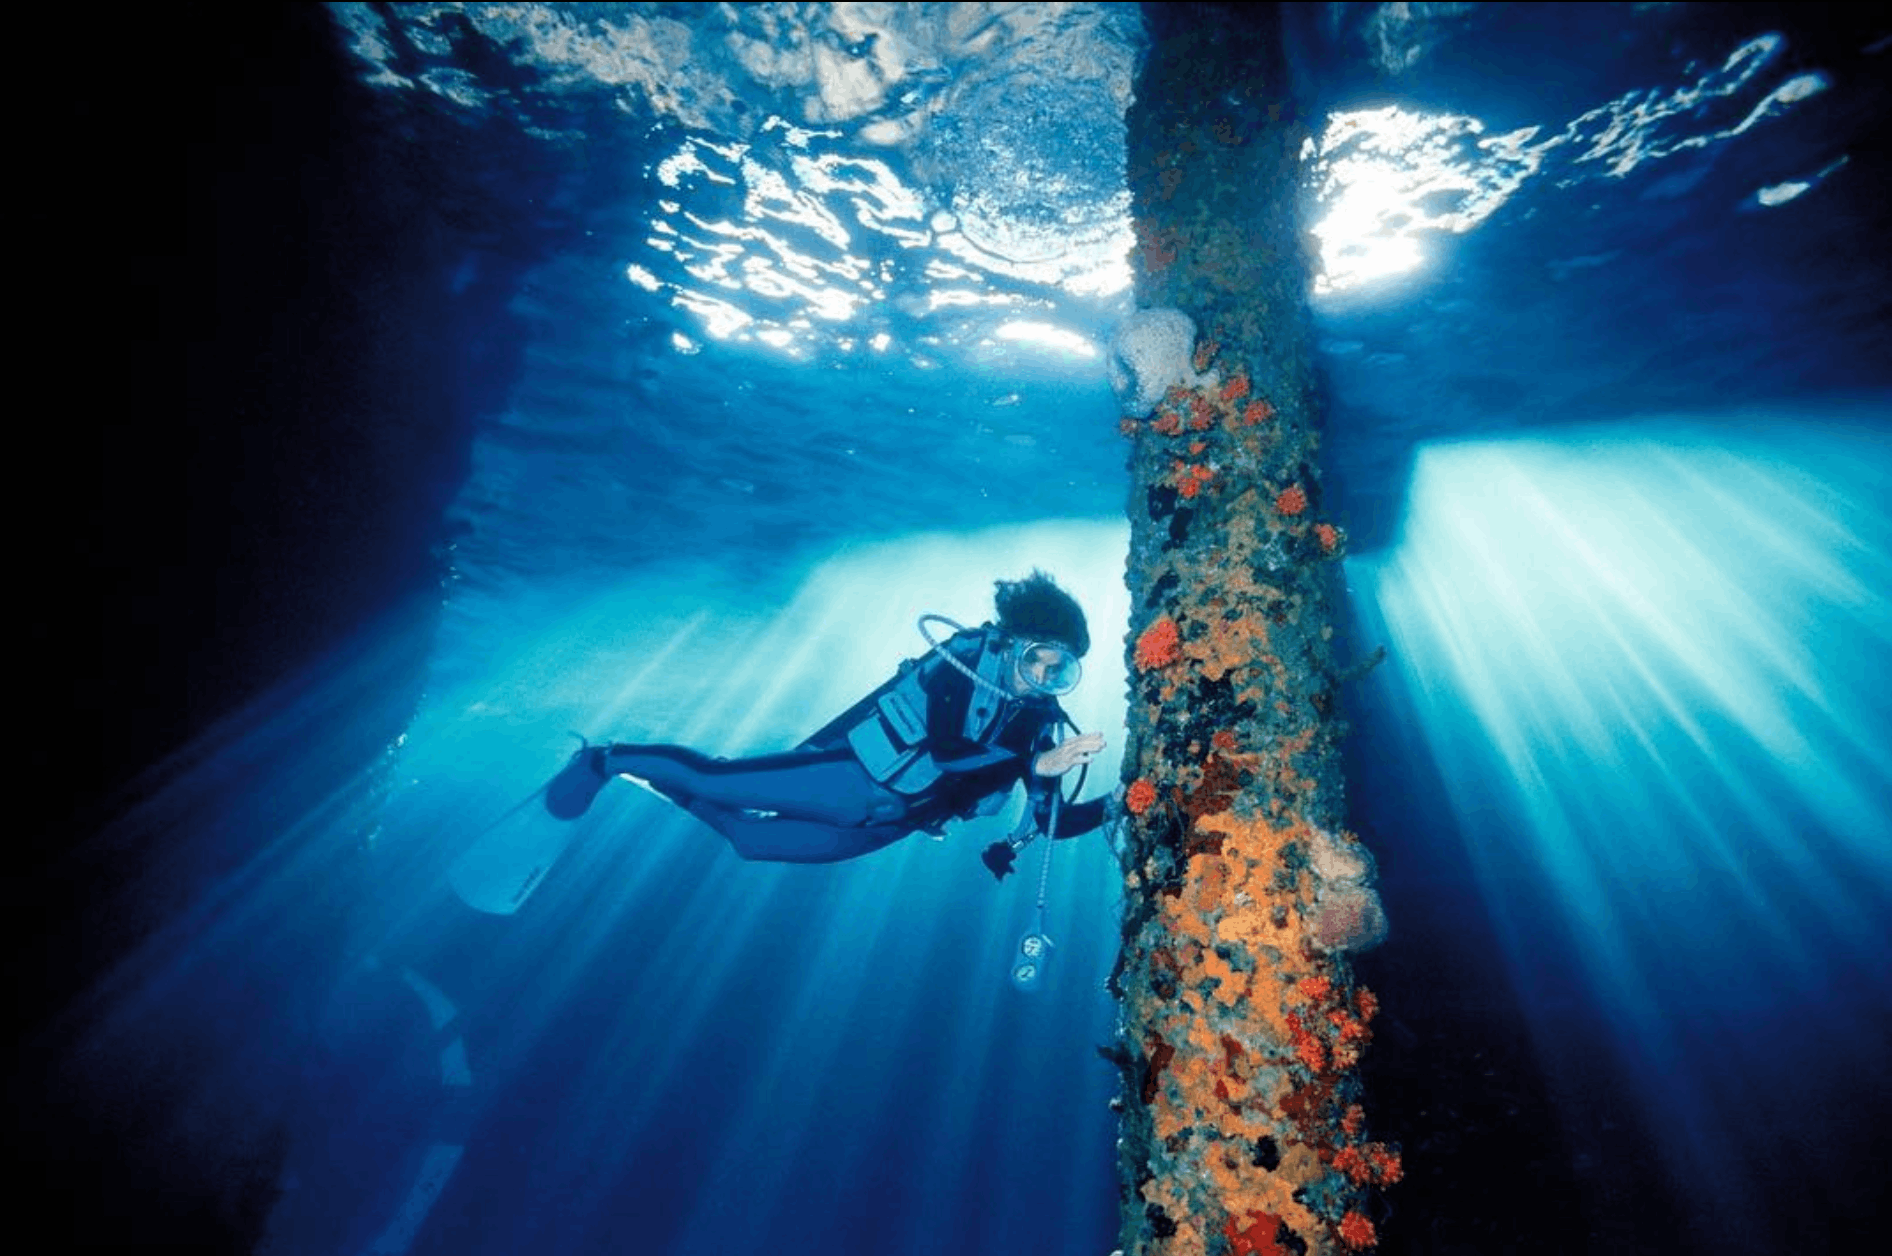 water outdoors person human diving diver sport sports scuba diving aqua scuba